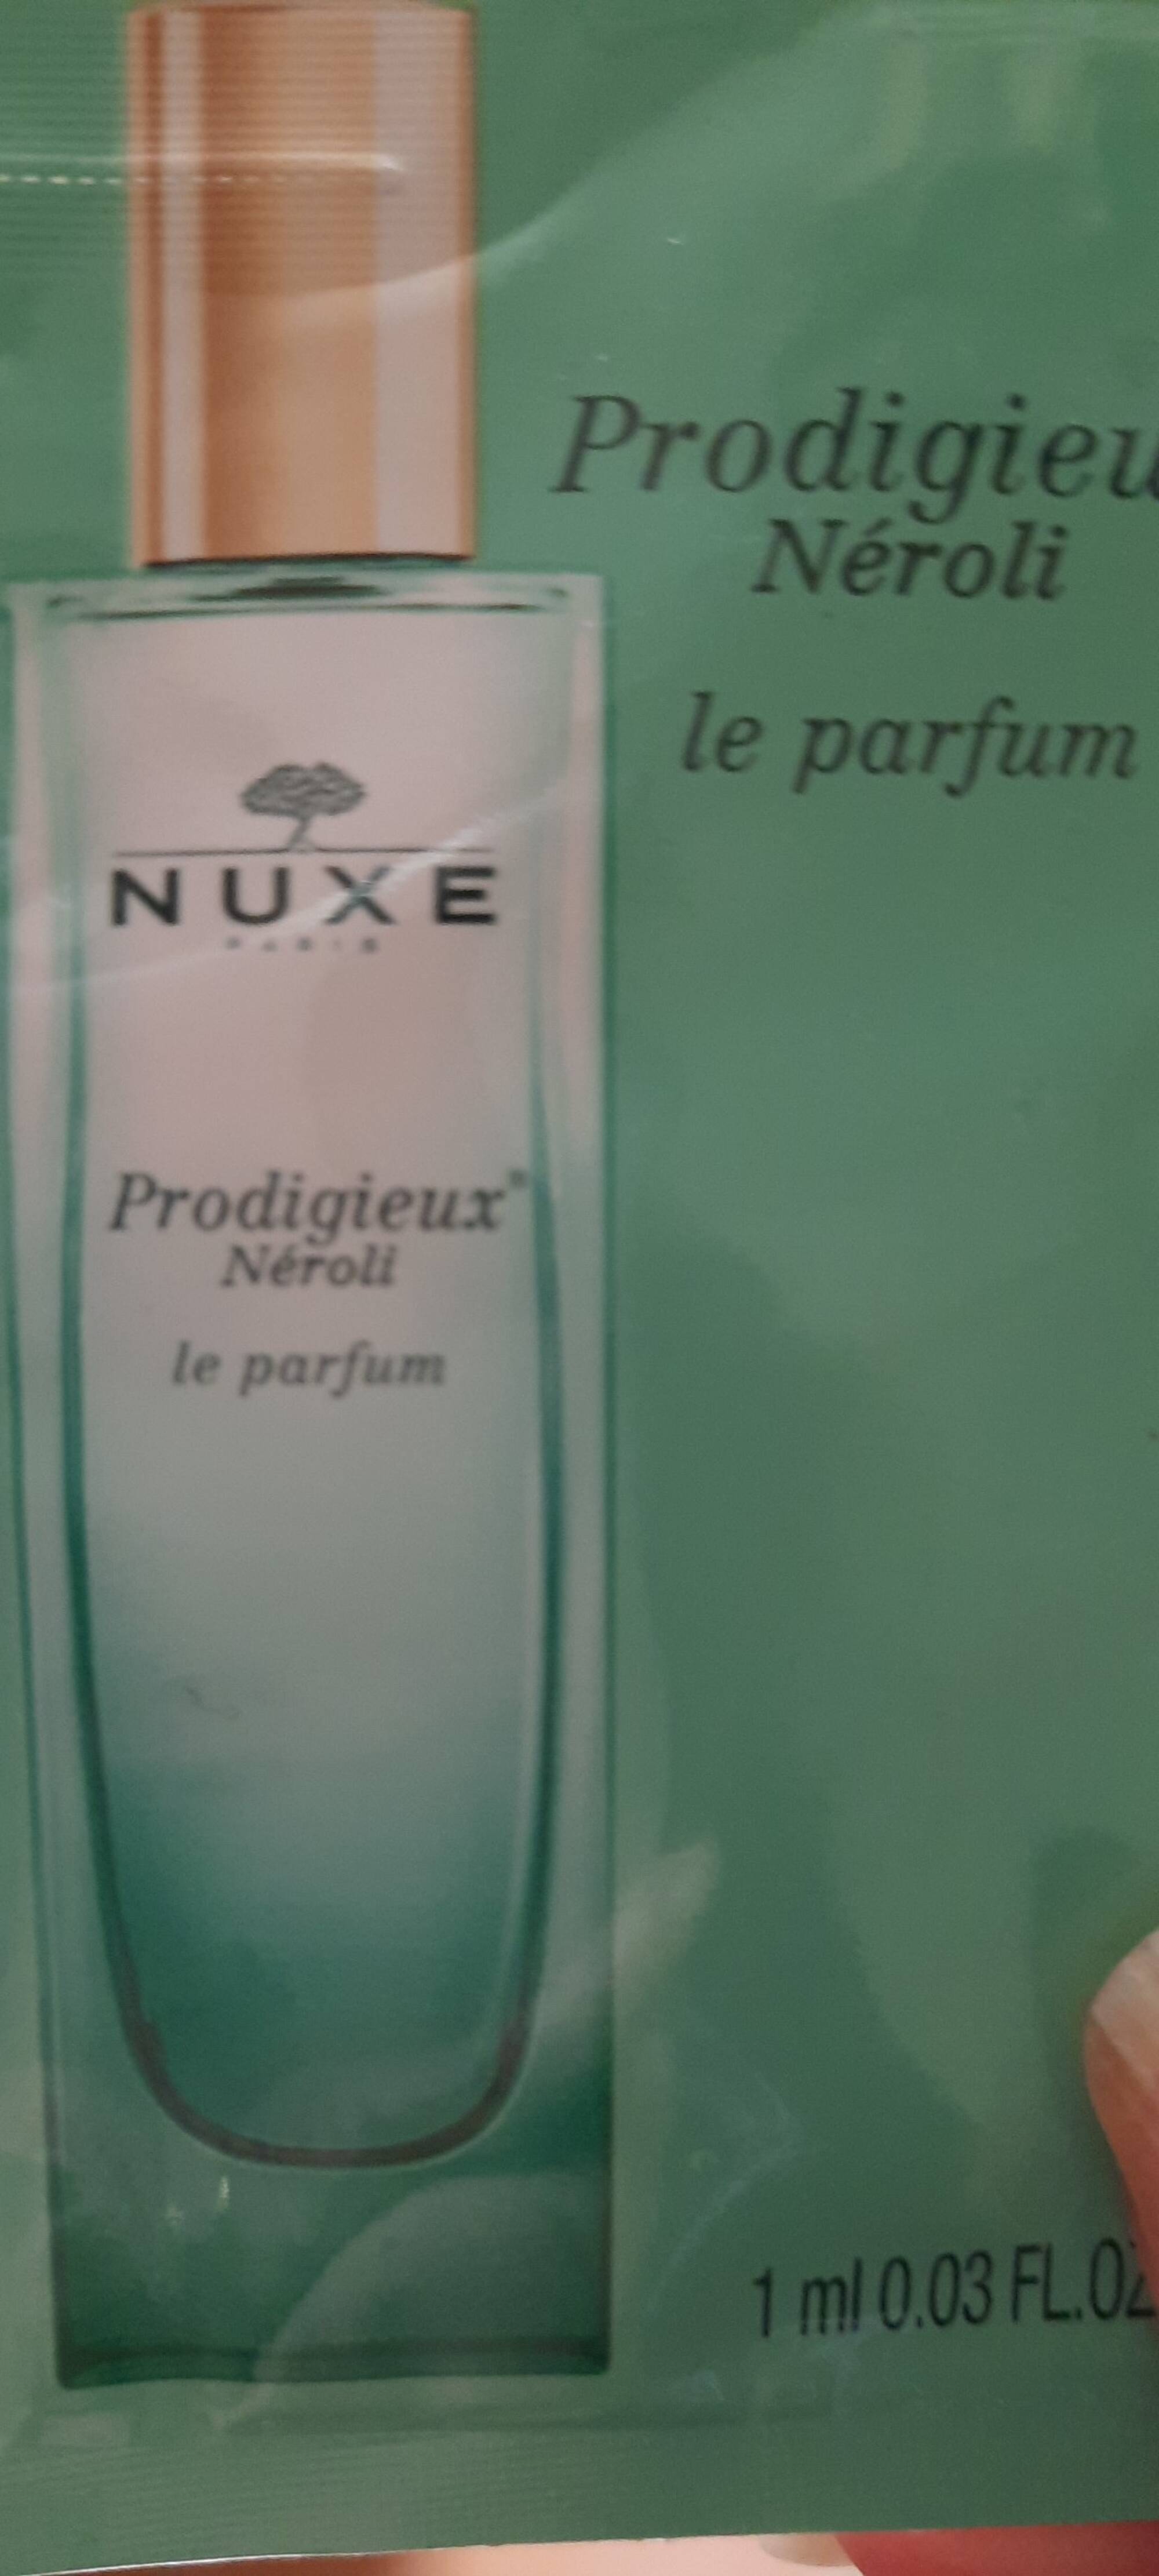 NUXE - Prodigieux néroli - Le parfum